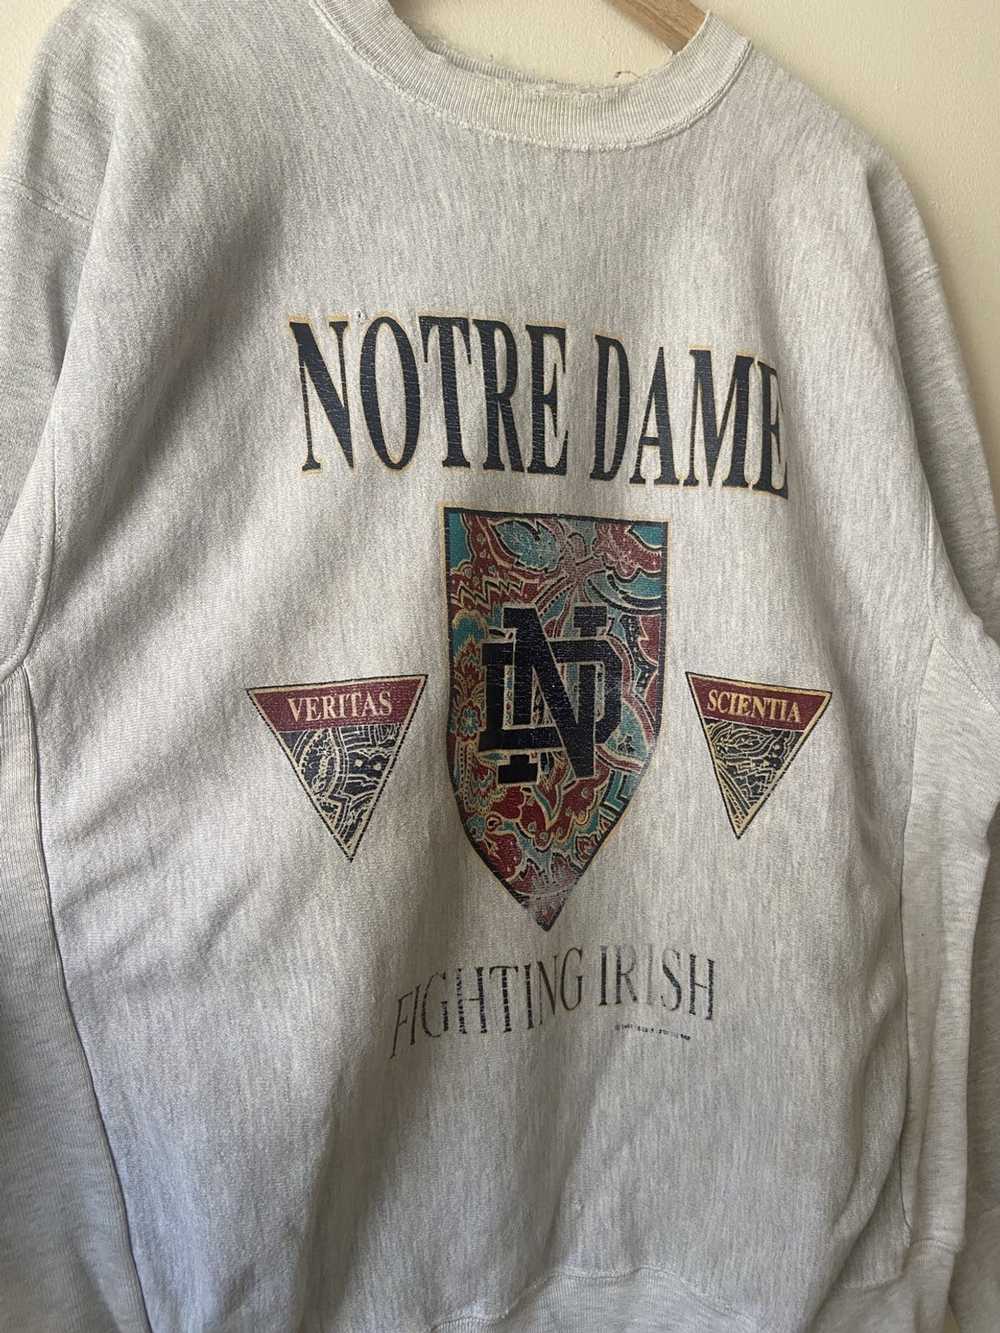 Vintage Vintage 80’s Notre Dame Fighting Irish gr… - image 2